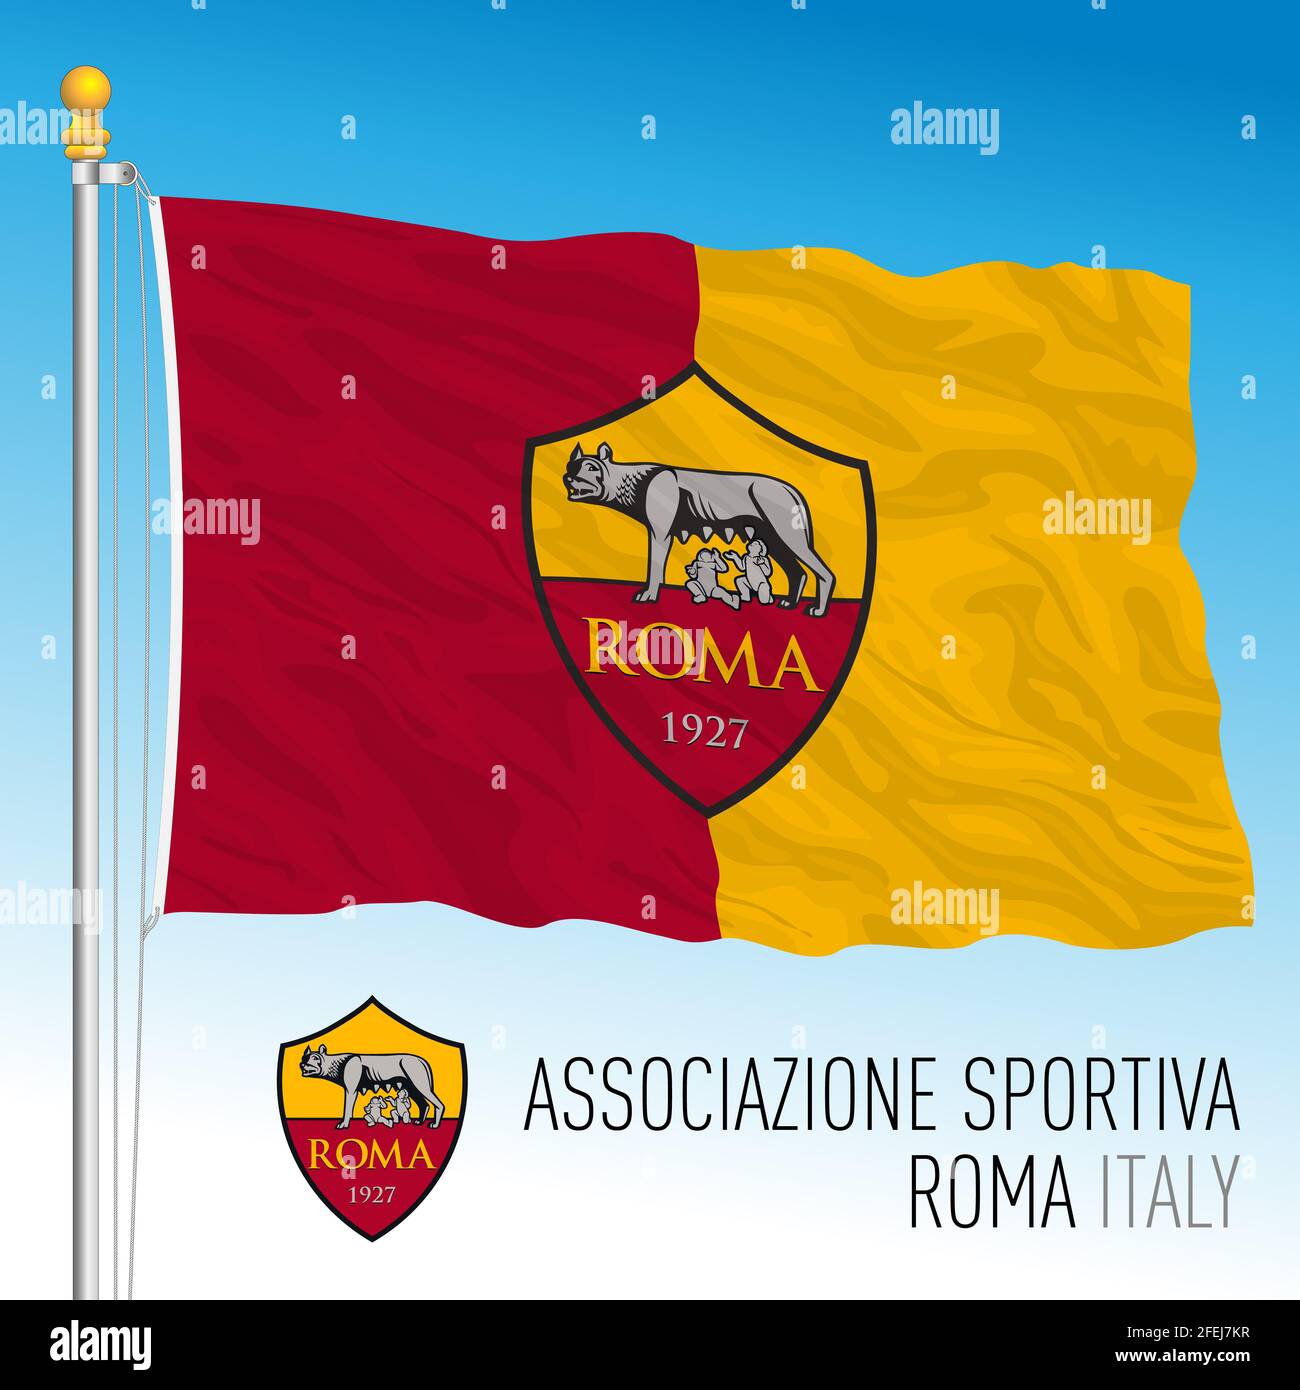 Italia, anno 2021, campionato di calcio - Roma AC bandiera e cresta di  squadra, illustrazione vettoriale Foto stock - Alamy